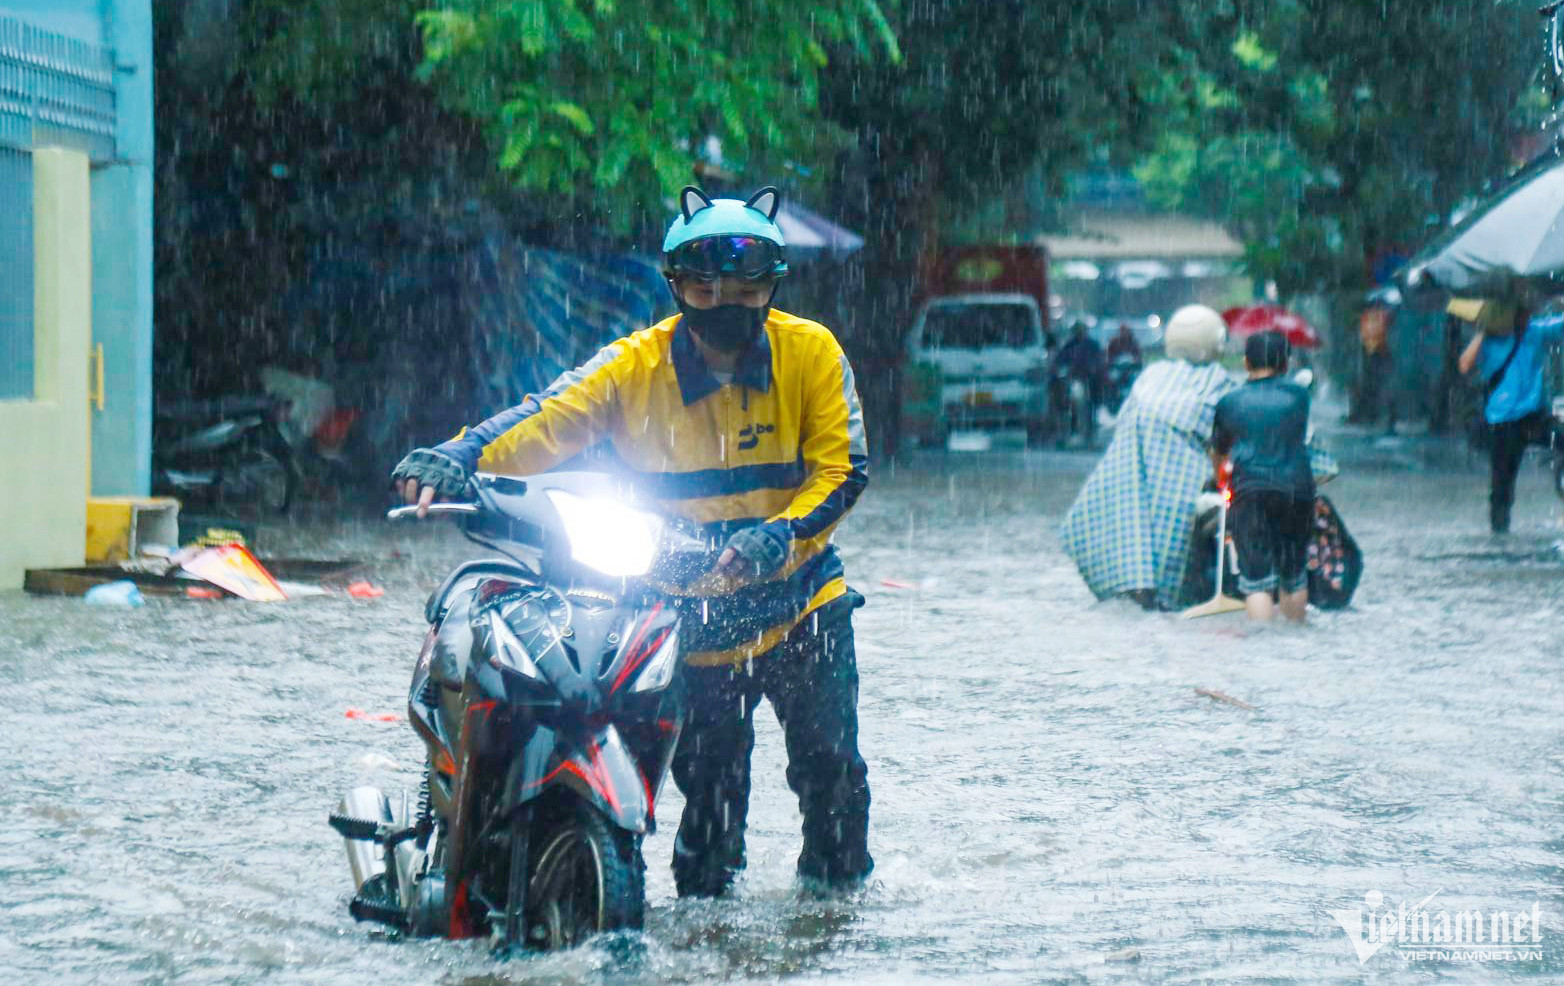 Hà Nội mưa lớn, người đi xe máy chới với giữa dòng nước ngập - Ảnh 17.